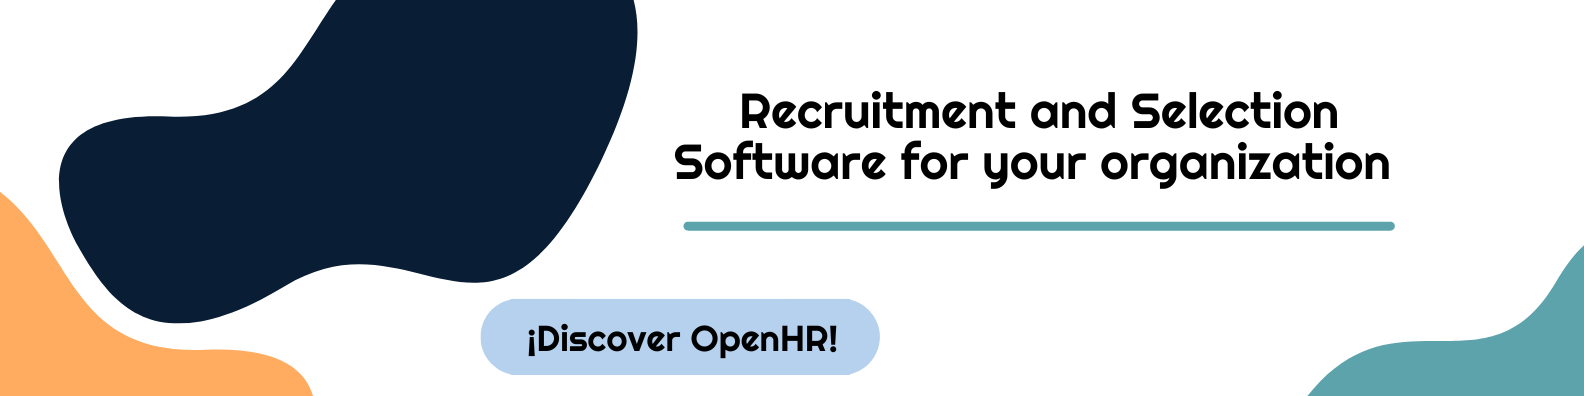 OpenHR recruitment